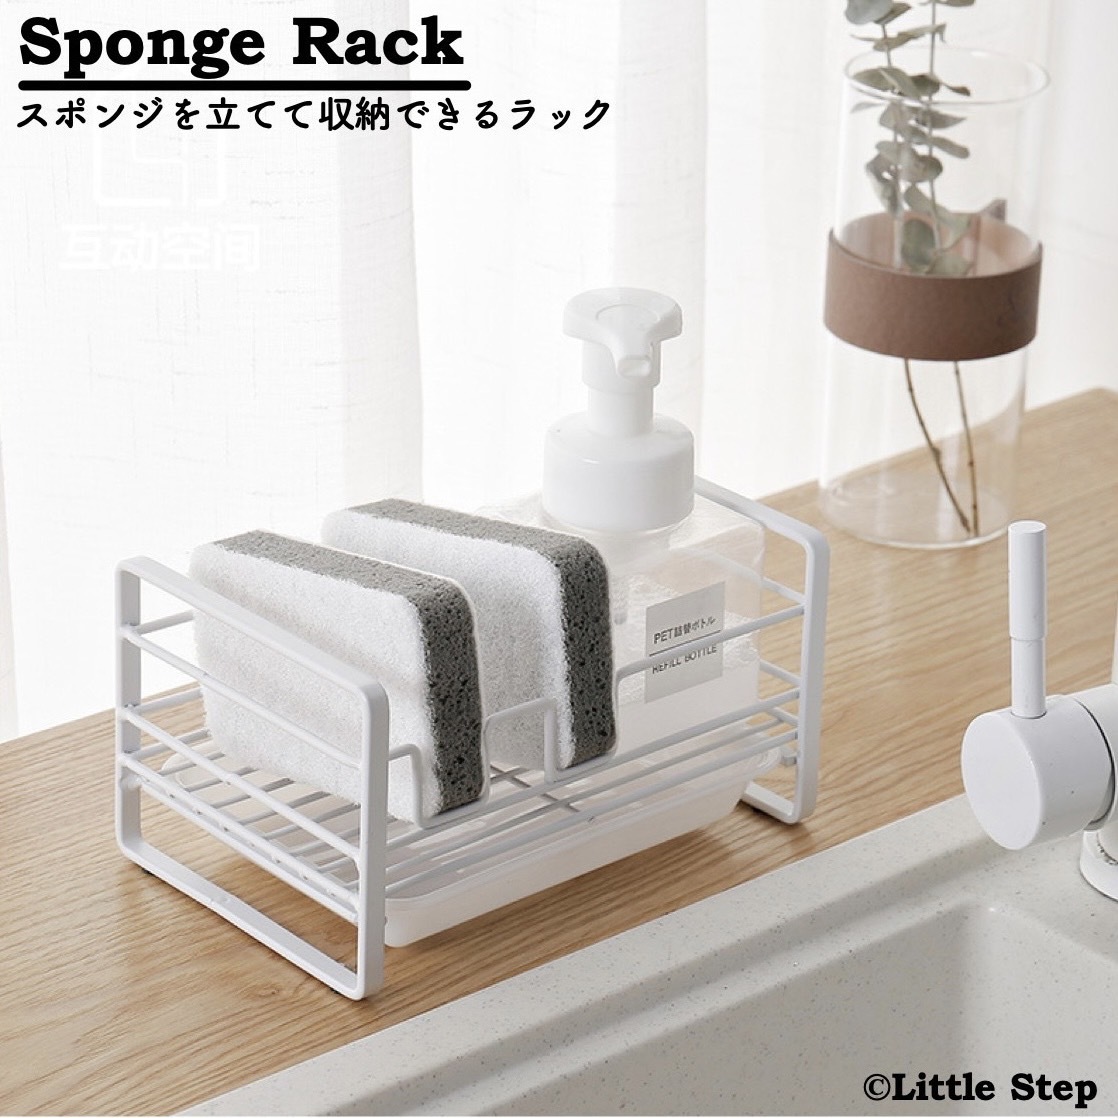  sponge put kitchen stainless steel detergent stylish drainer sponge rack sponge holder 